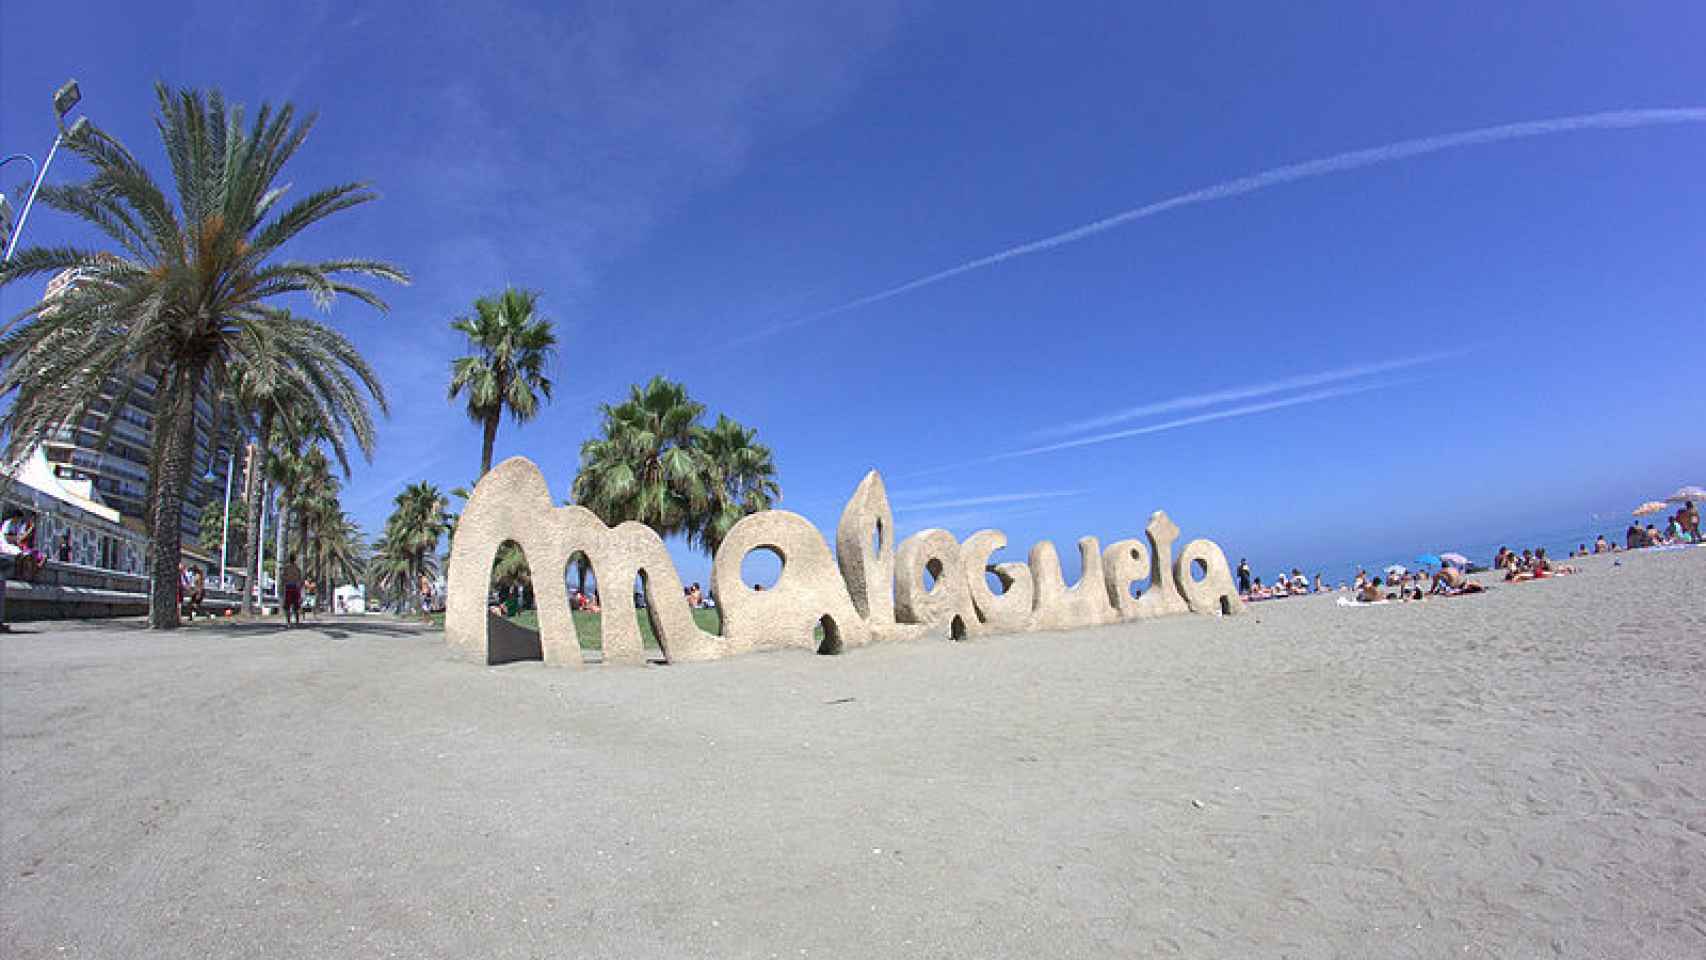 La popular playa de La Malagueta recibirá a millones de turistas en 2017.